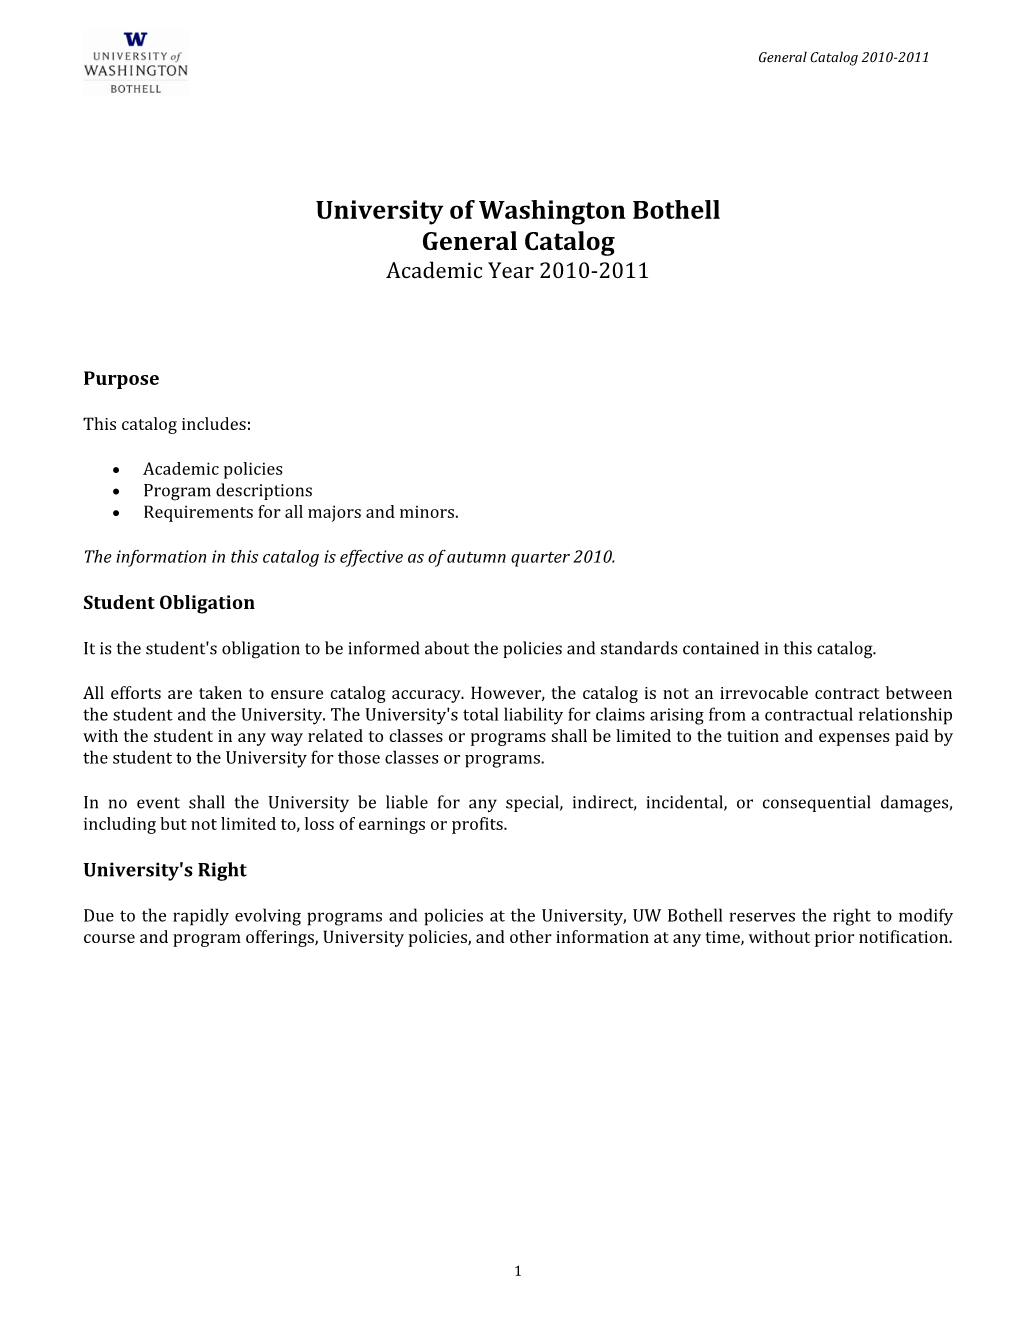 University of Washington Bothell General Catalog Academic Year 2010‐2011